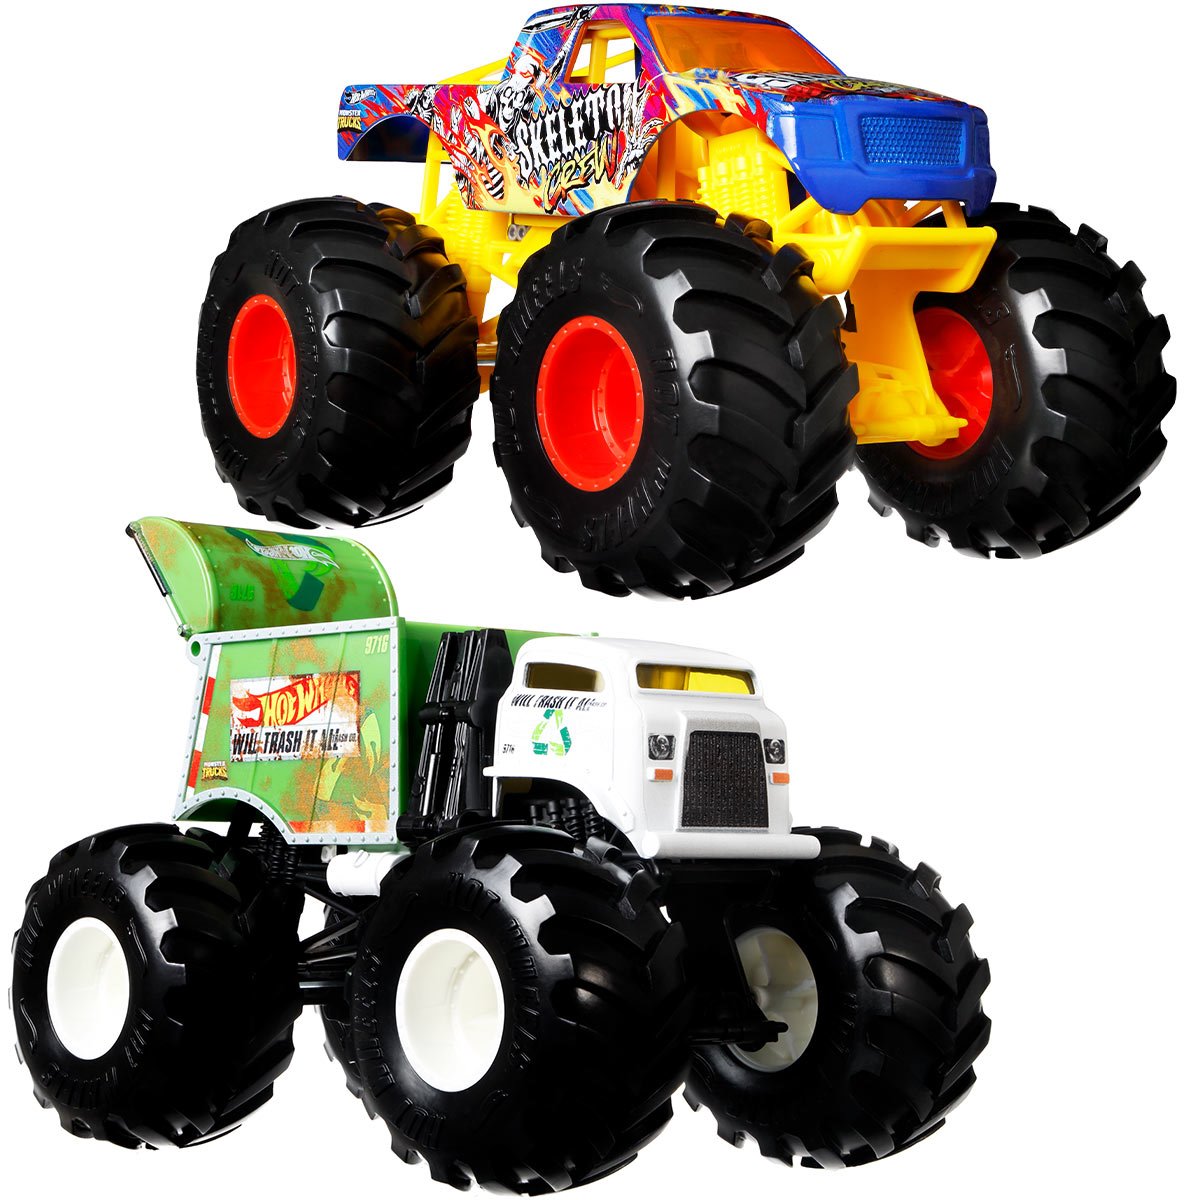 Hot Wheels Monster Trucks 1:24 - Boneshaker